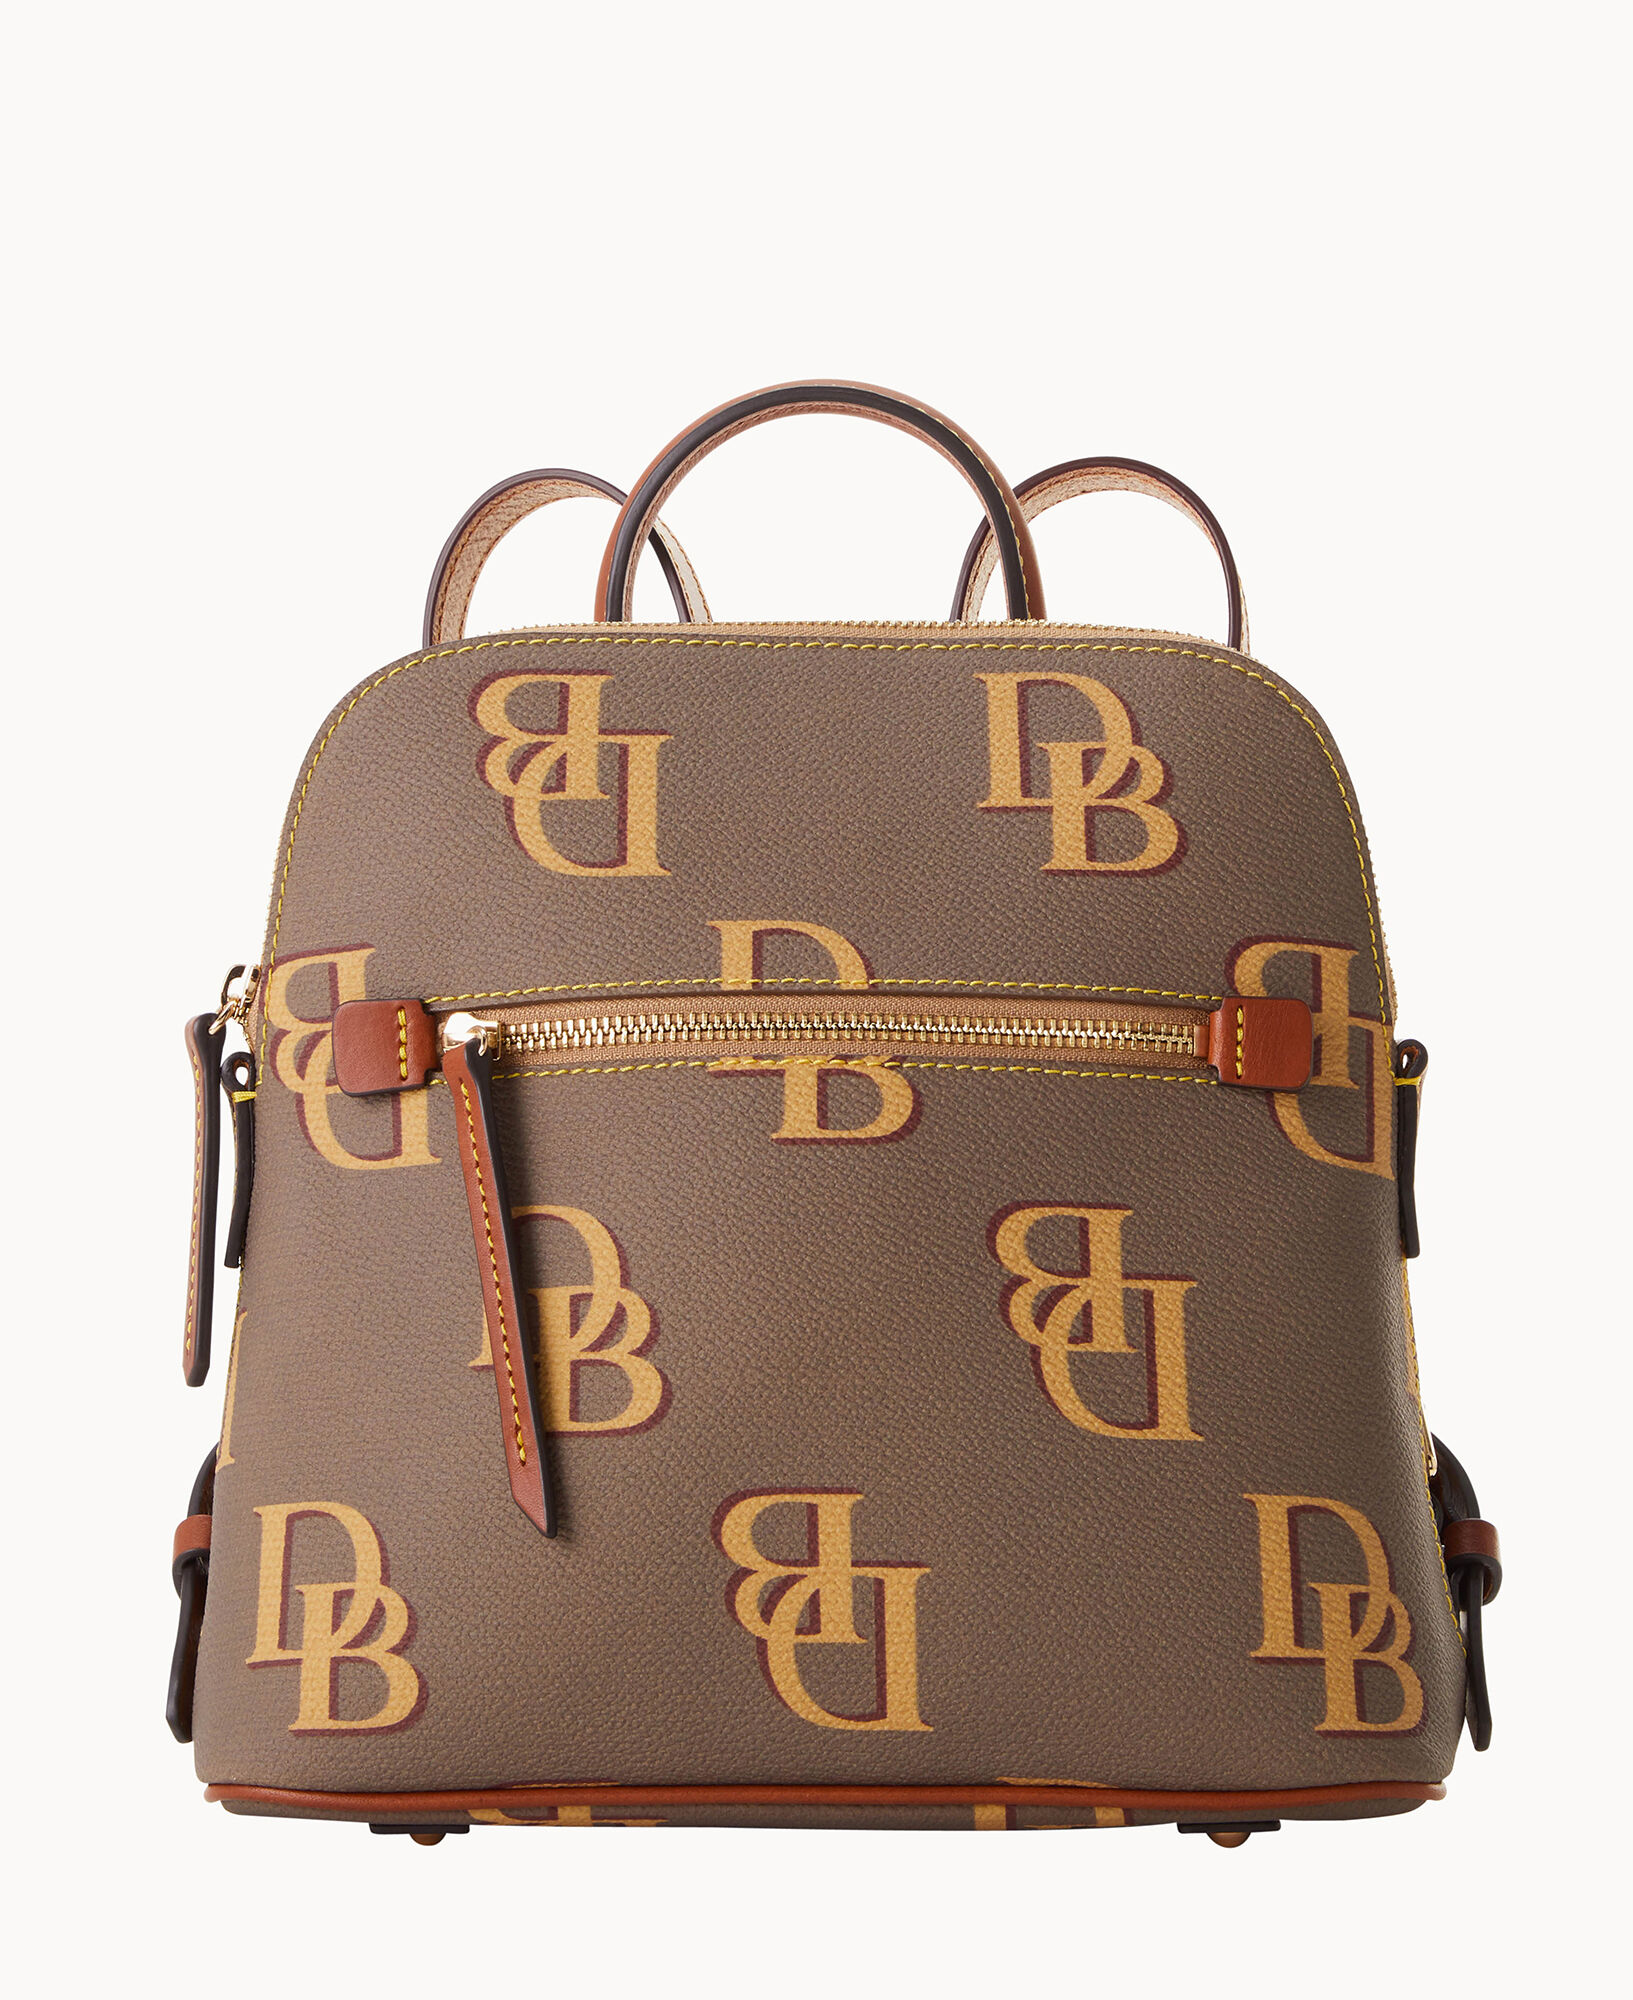 Dooney & Bourke Monogram Backpack